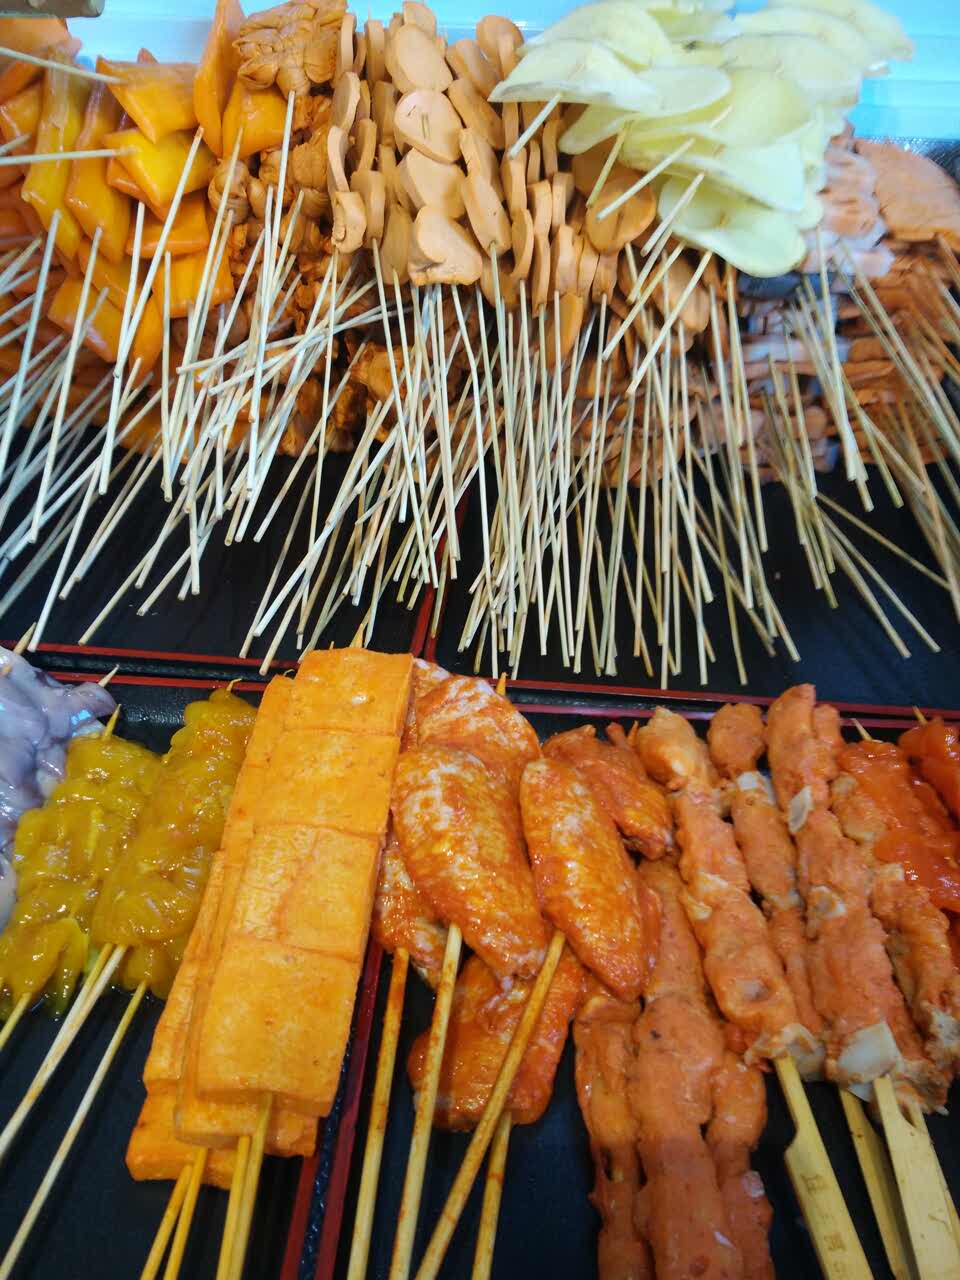 麻辣串菜品种类图片图片